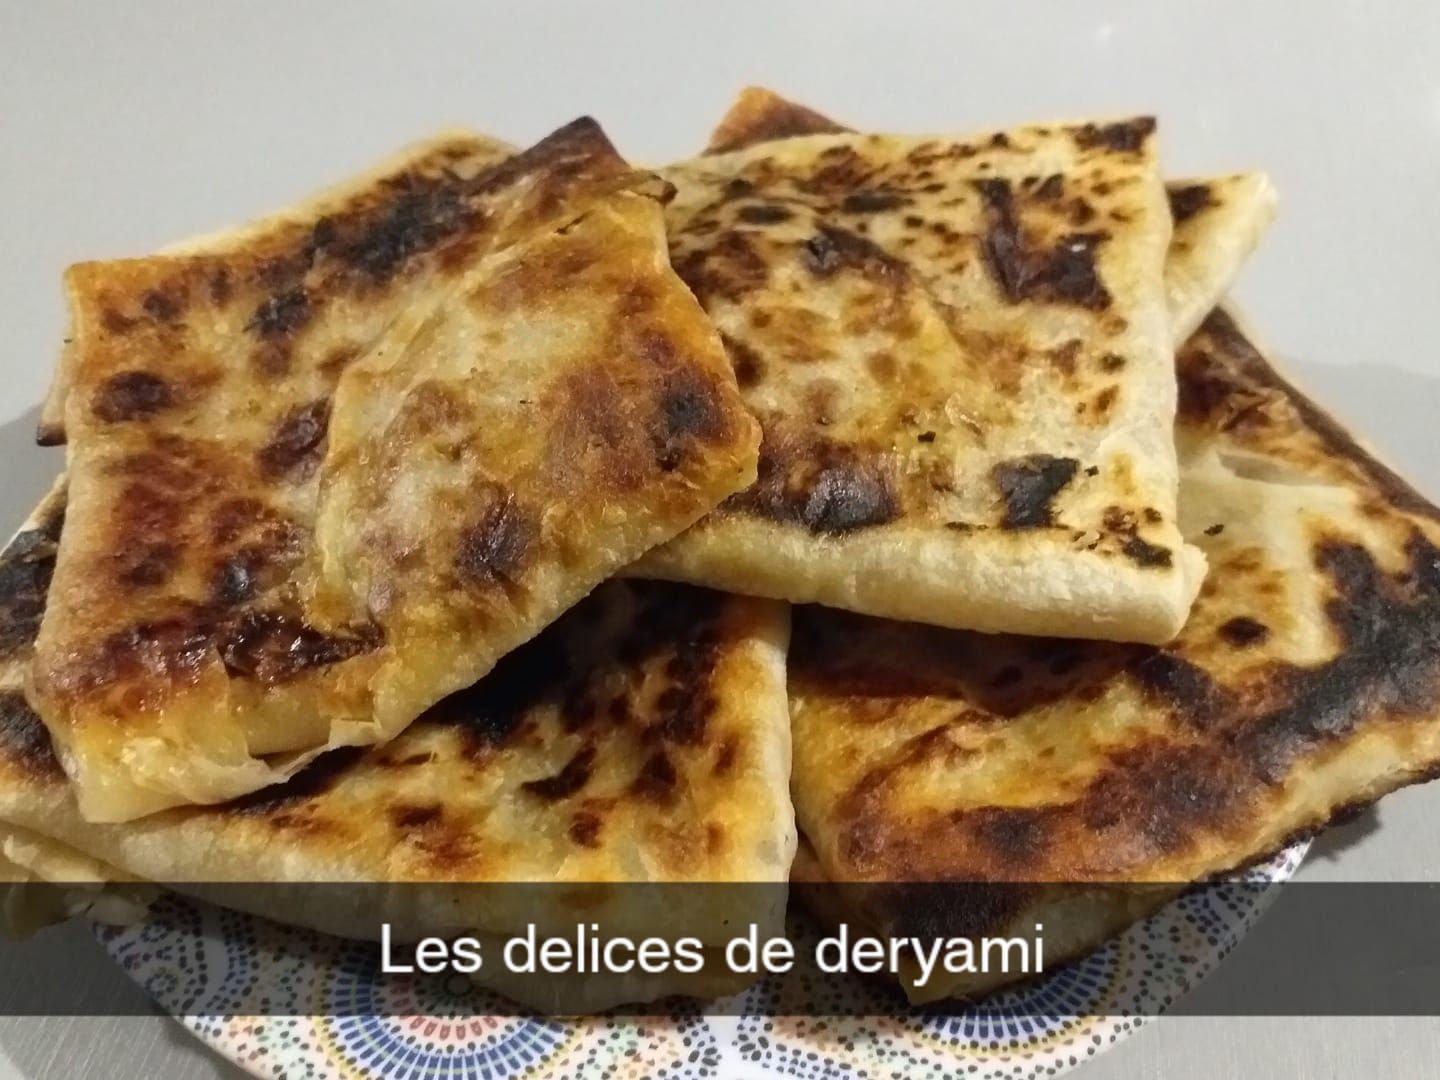 Msemen farci viande haché poivron (Algerie) - les delices de deryami